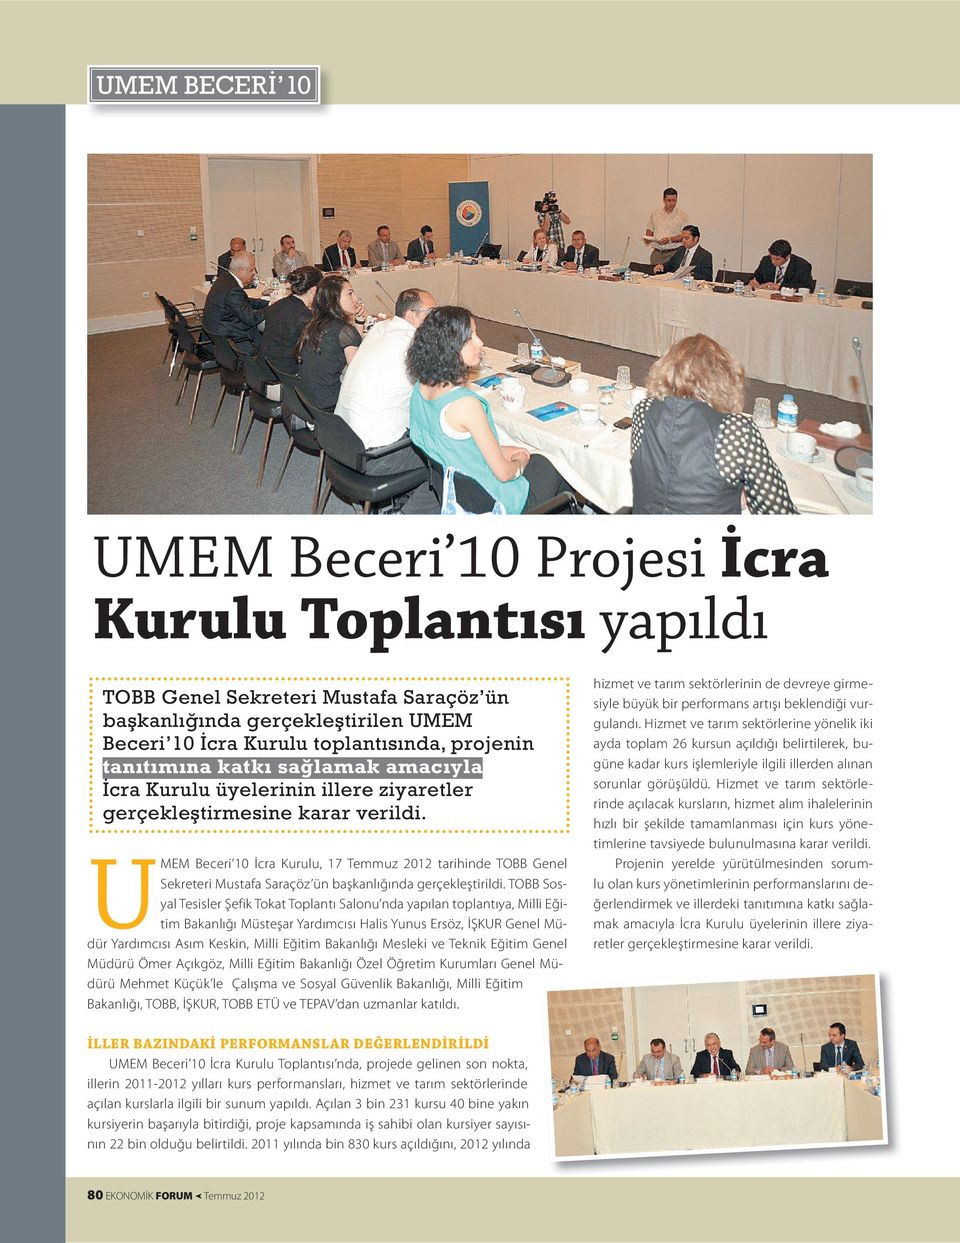 U MEM Beceri 10 İcra Kurulu, 17 Temmuz 2012 tarihinde TOBB Genel Sekreteri Mustafa Saraçöz ün başkanlığında gerçekleştirildi.